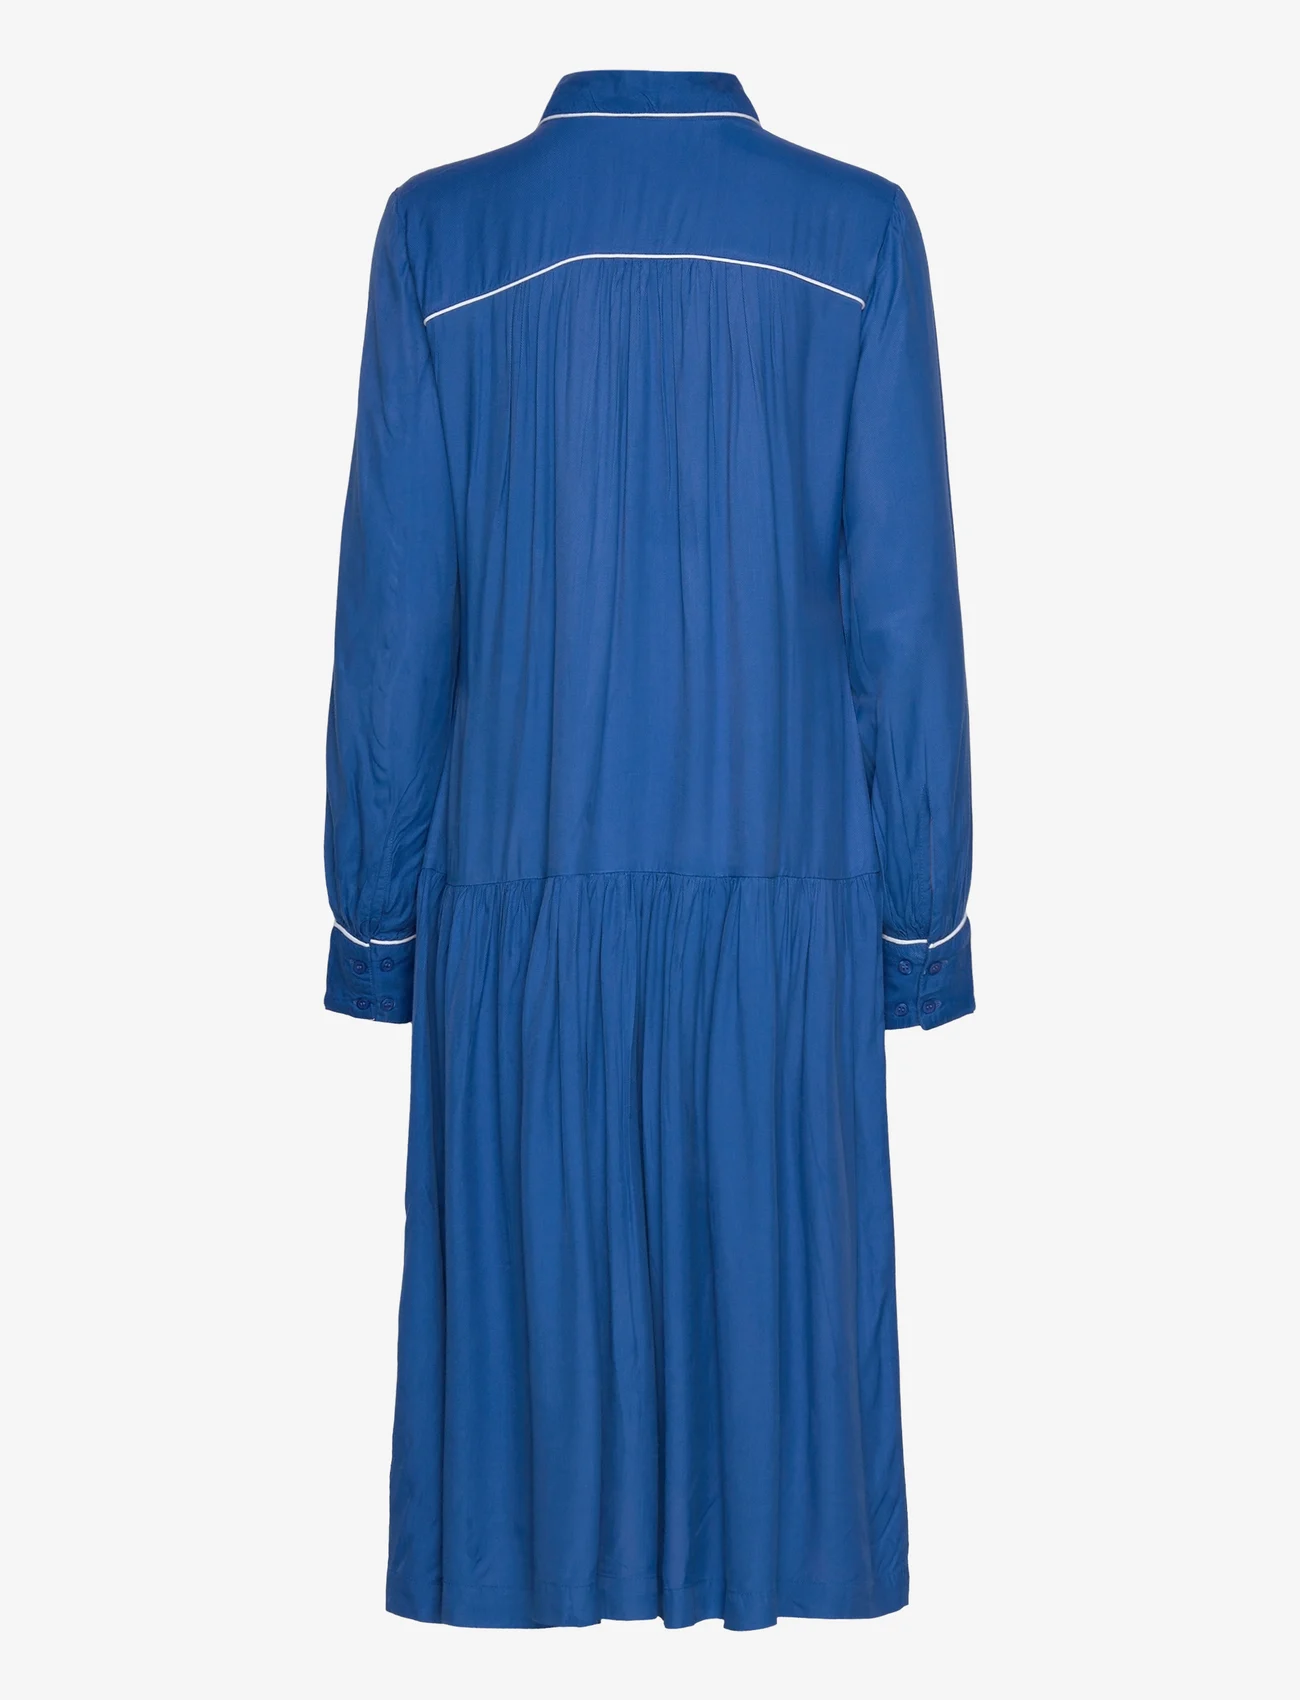 Masai - Nejaba - marškinių tipo suknelės - nebulas blue - 1